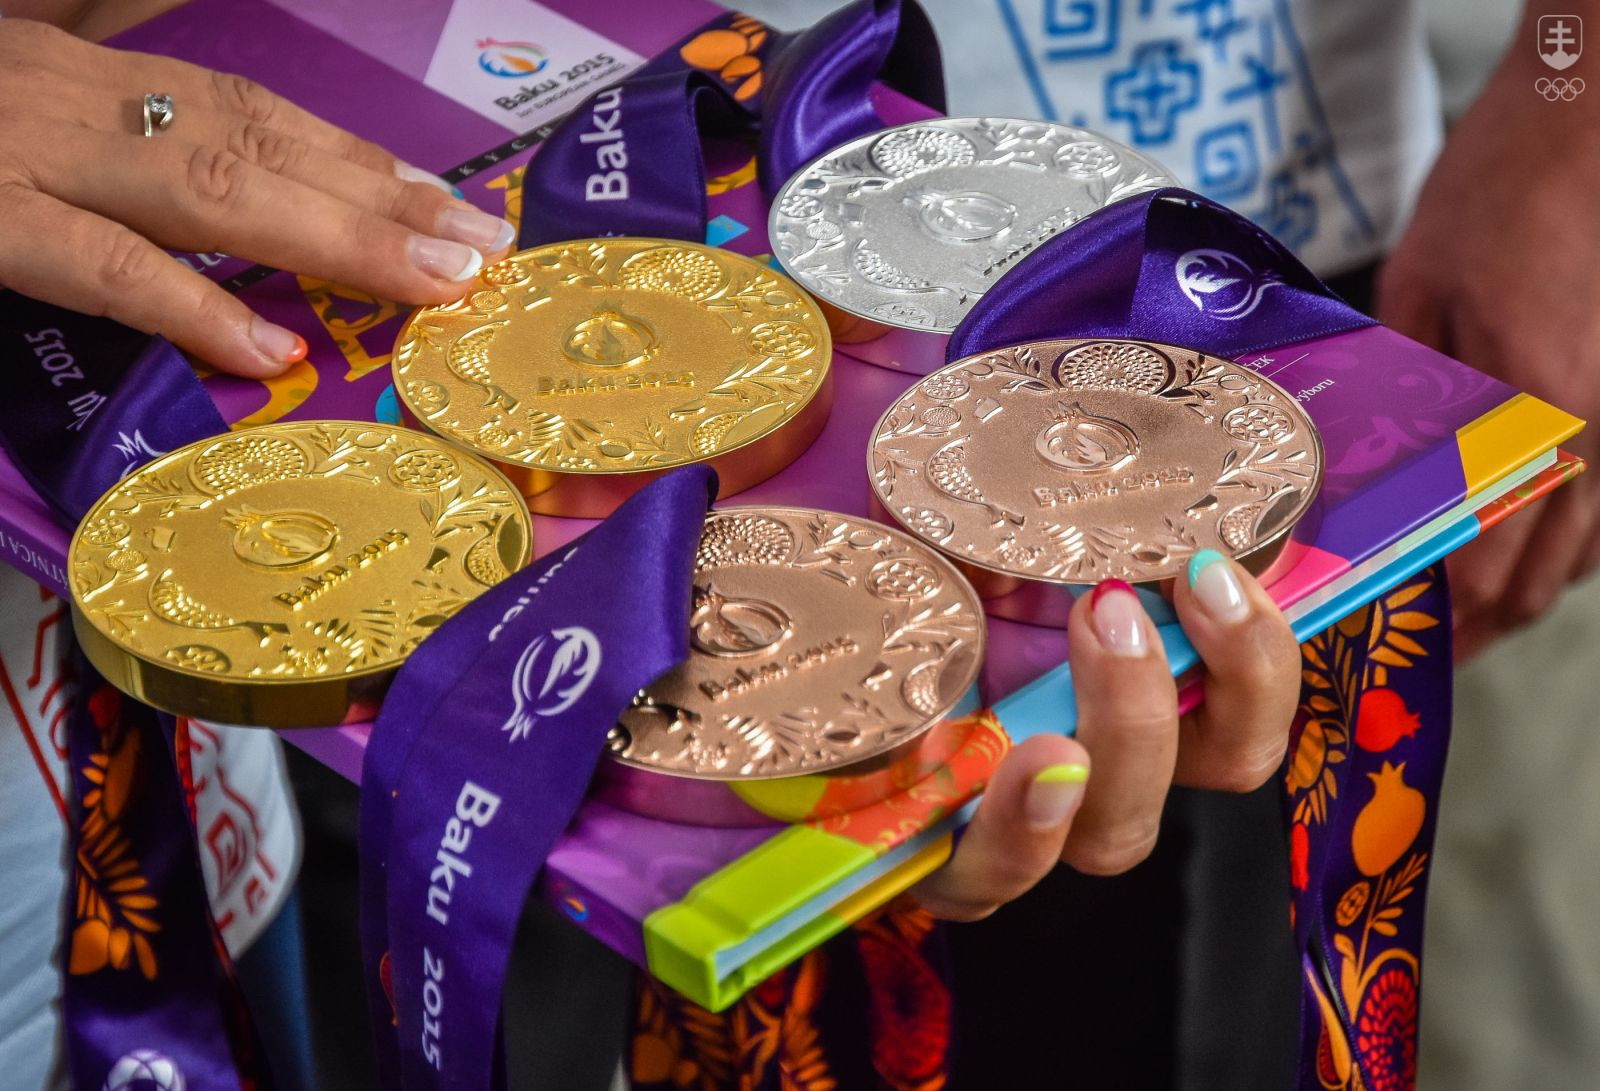 Päť zo siedmich slovenských medailí z I. európskych hier na obálke knihy BAKU 2015. FOTO: JÁN SÚKUP